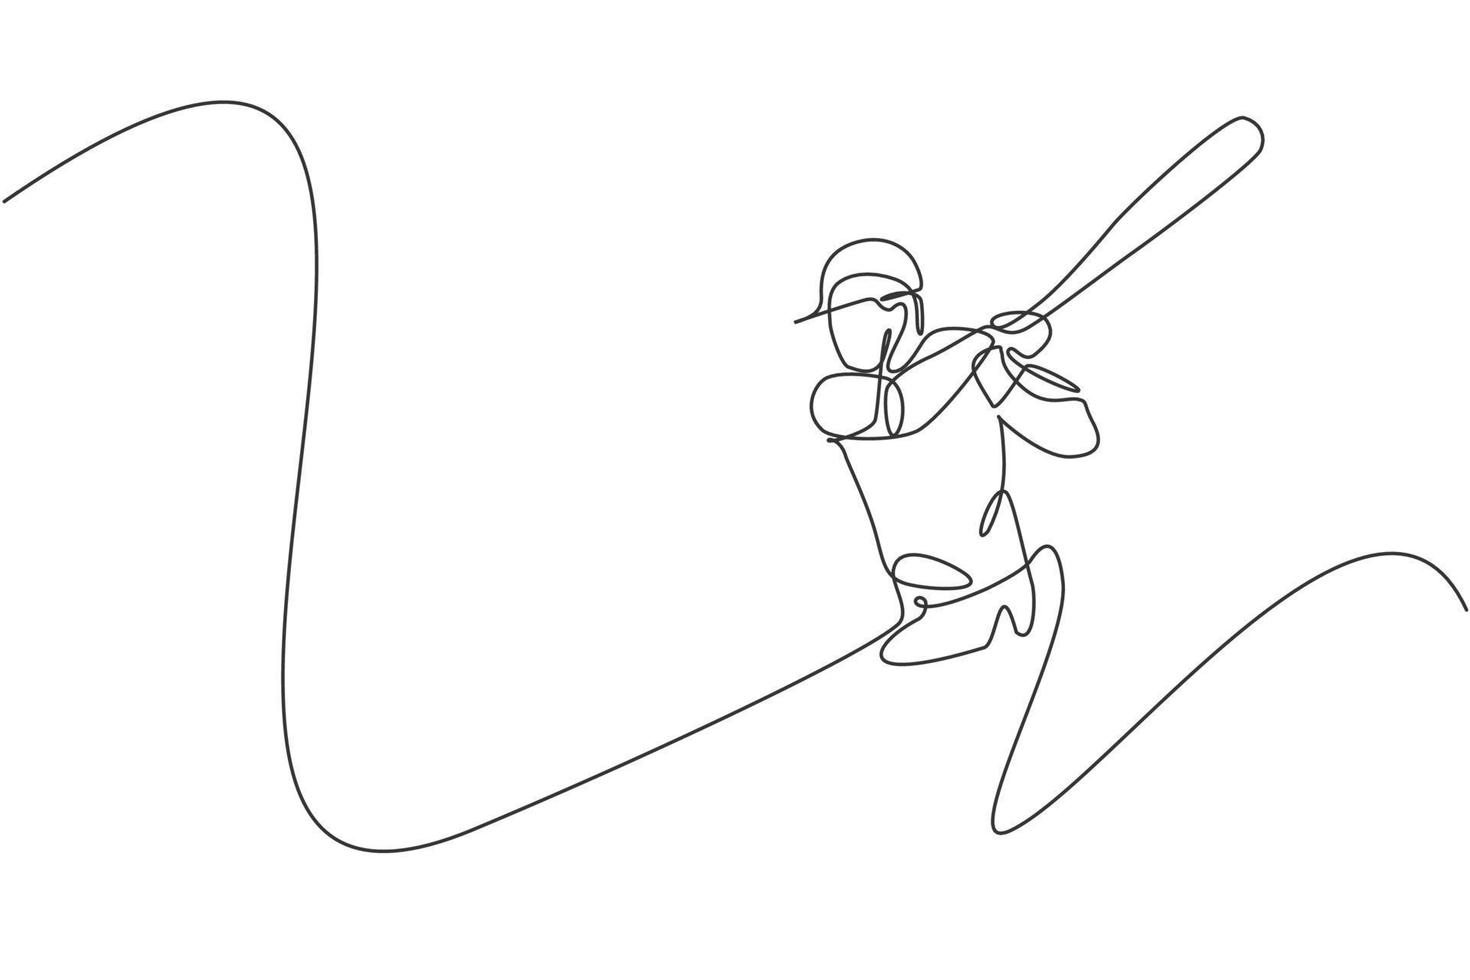 en kontinuerlig linjeteckning av ung sportig man baseballspelare övning för att slå bollen. tävlingsidrottskoncept. dynamisk enda rad rita design vektorgrafisk illustration för marknadsföring affisch vektor